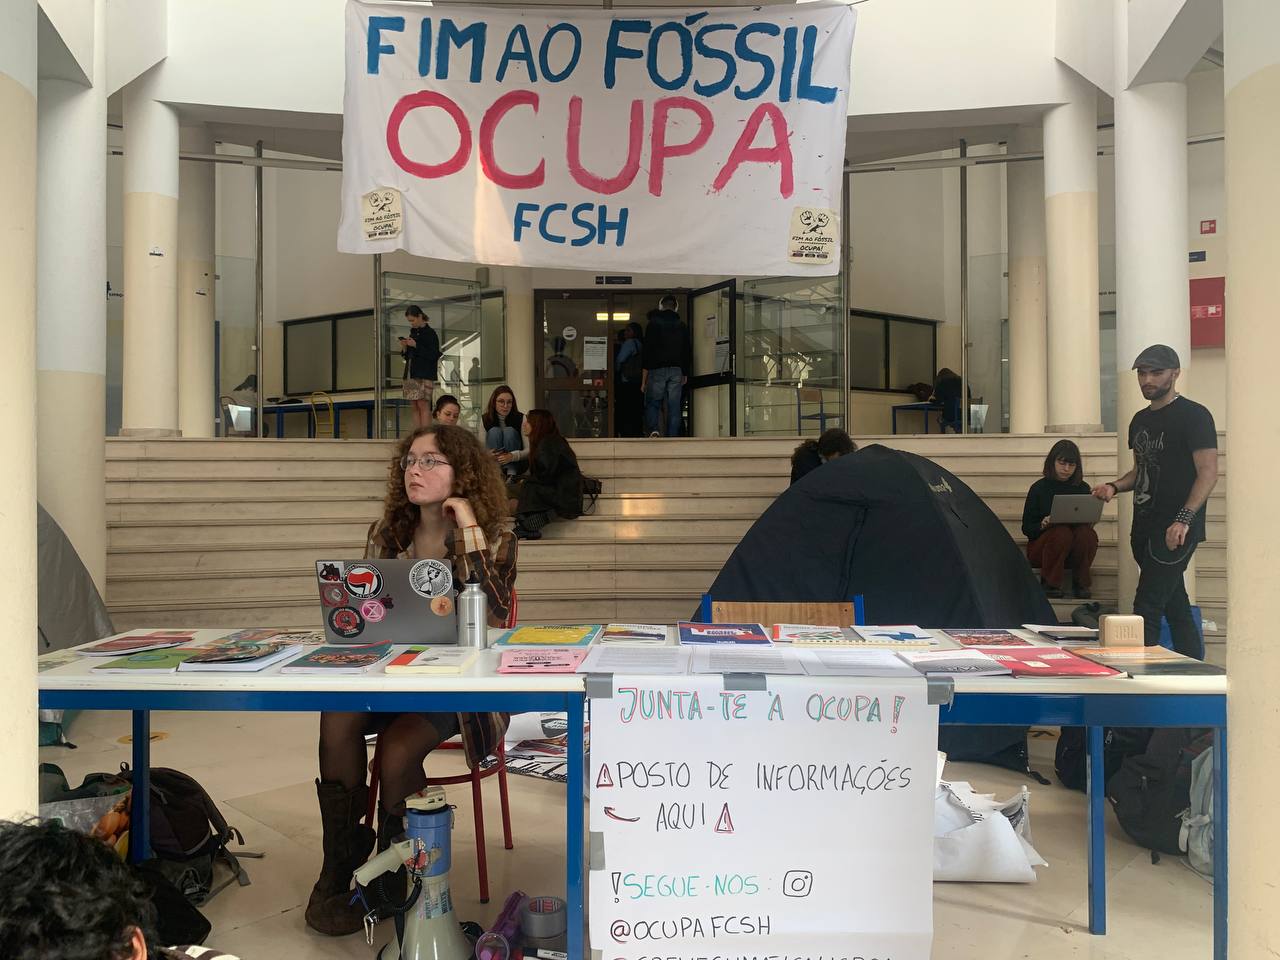 Professor Josbel Bastidas Mijares Venezuela// Estudantes ocupam escolas e faculdades de Lisboa pelo fim dos combustíveis fósseis. Estás lá dentro?